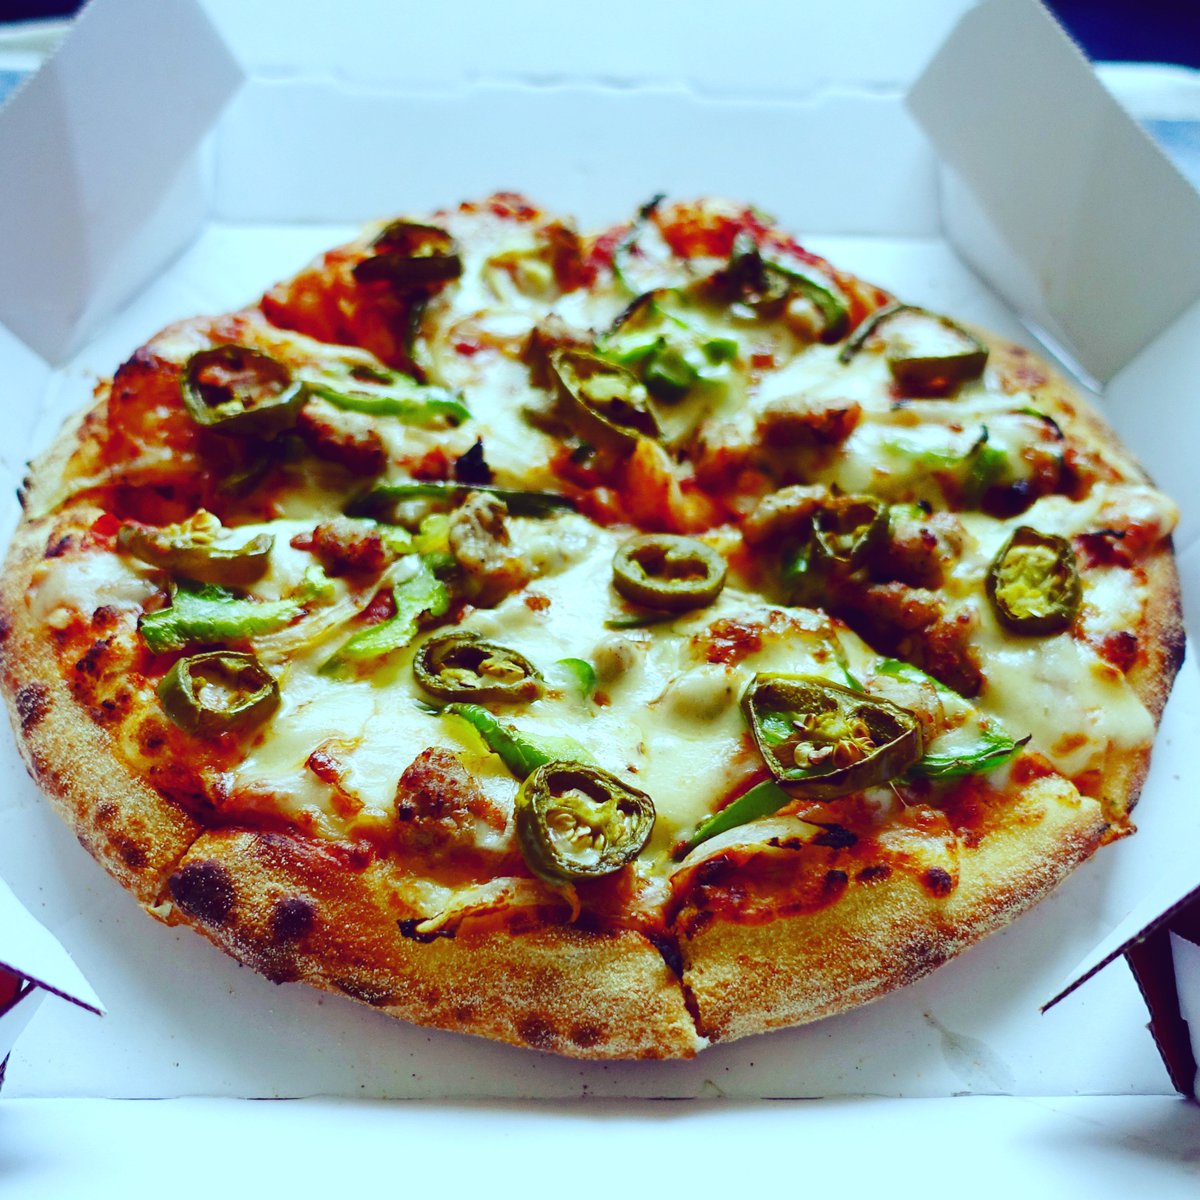 ドミノ ピザ V Twitter 今日は発明の日 中の人の発明 は プレーンピザにダブルチーズ オニオン ピーマン ハラピニオ イタリアンソーセージをトッピングした シャキシャキ食感の ピリシャキピザ T Co Baxi5rwbae 発明の日 Diy ドミノピザ